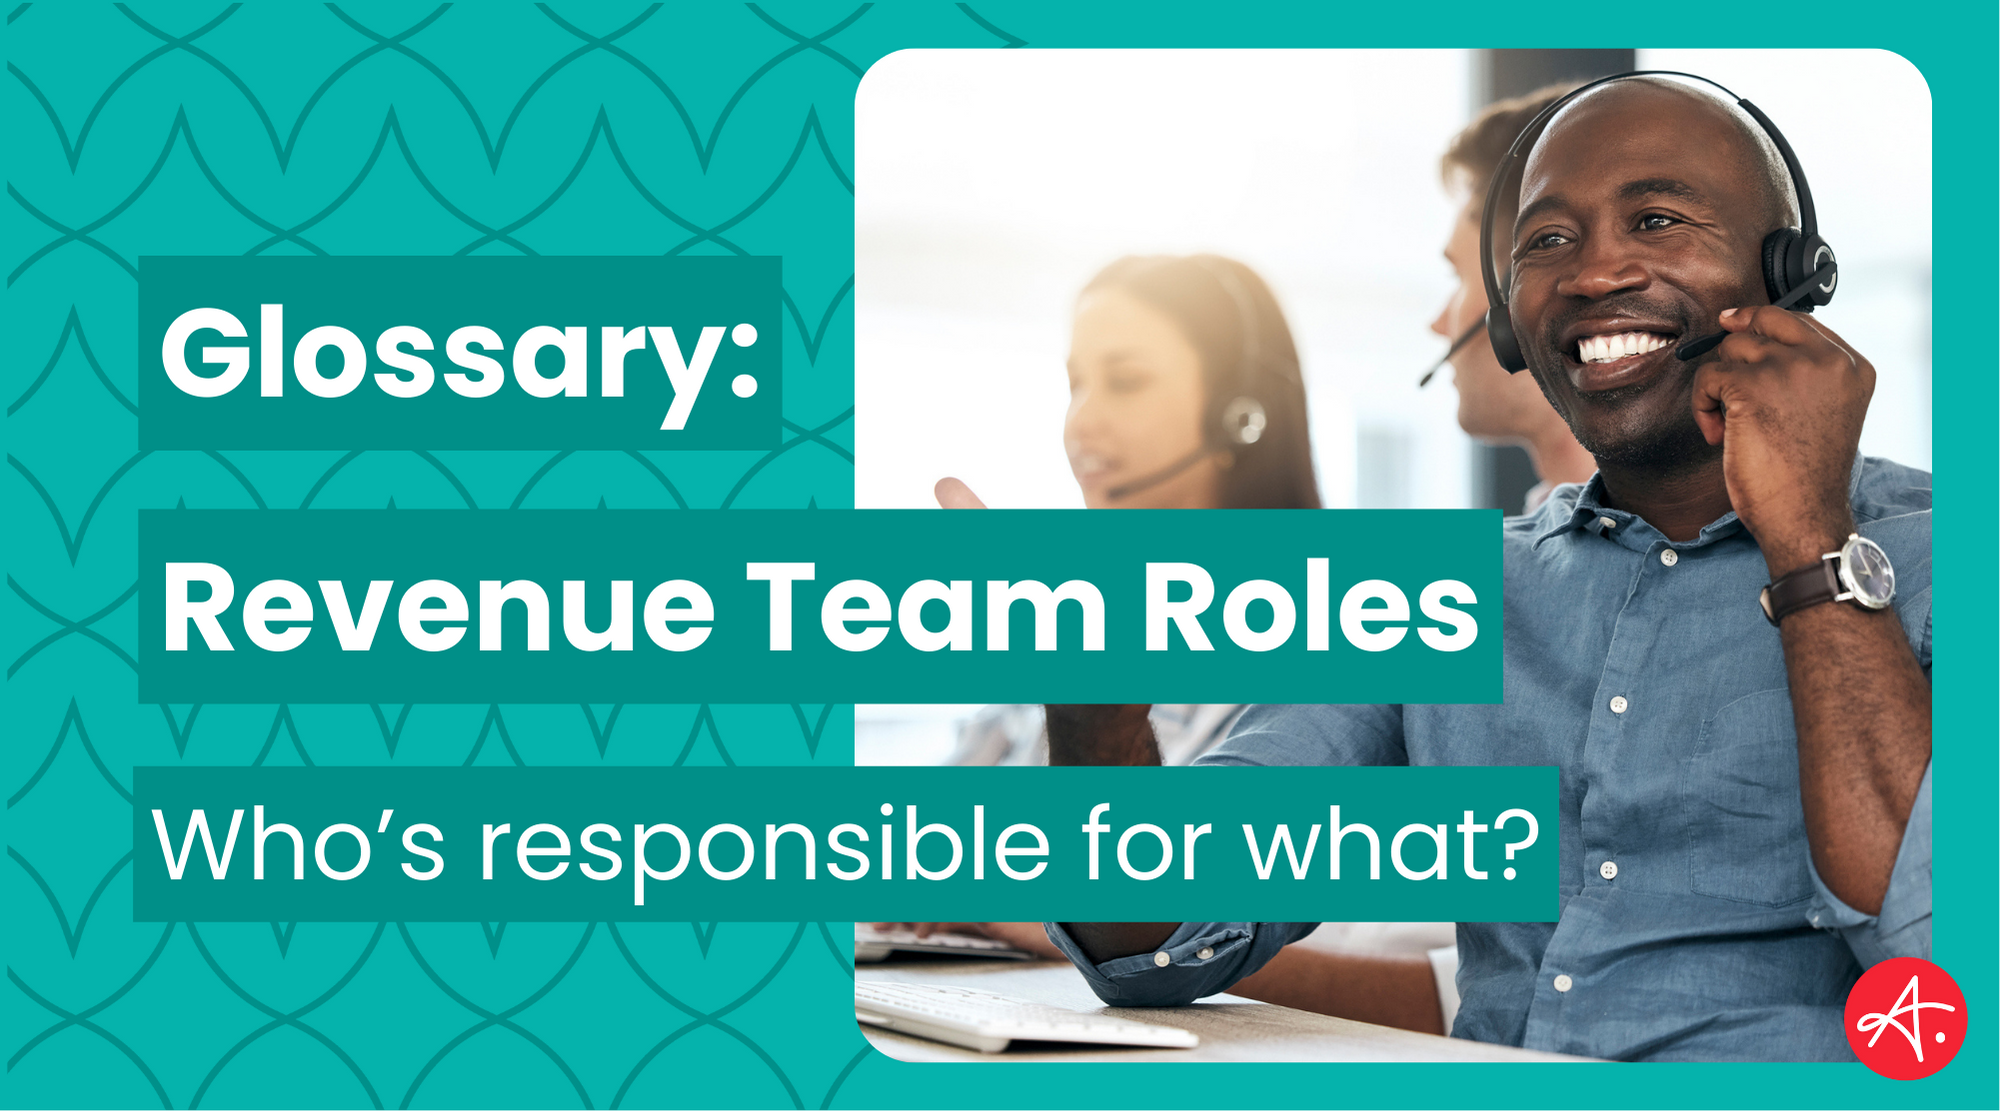 Glossary: Revenue Team Roles